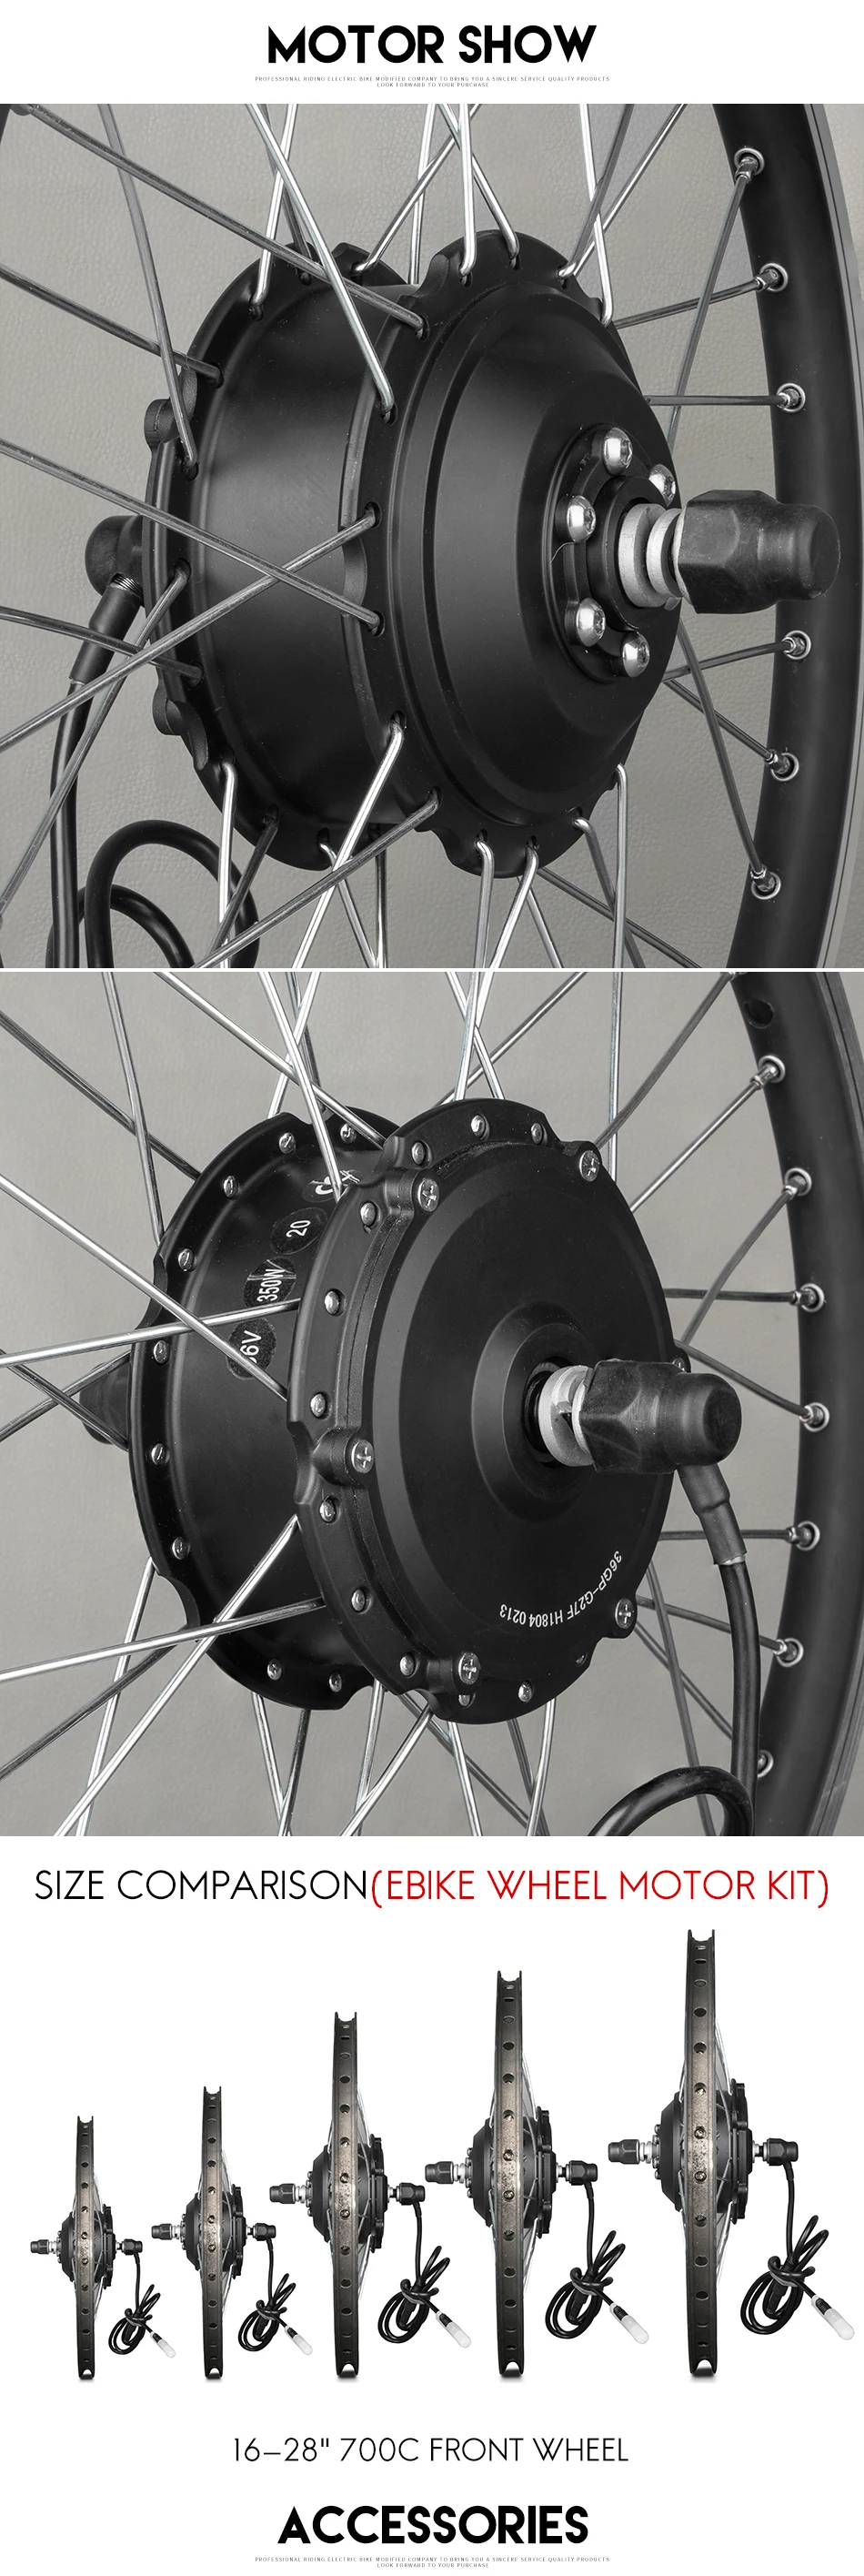 Комплект для преобразования велосипеда G24F 36 V 250 W регулятор для электровелосипеда мотор 2"-28" bycicle мотор для переднего колеса с LCD5 BLDC мотор велосипедные наборы